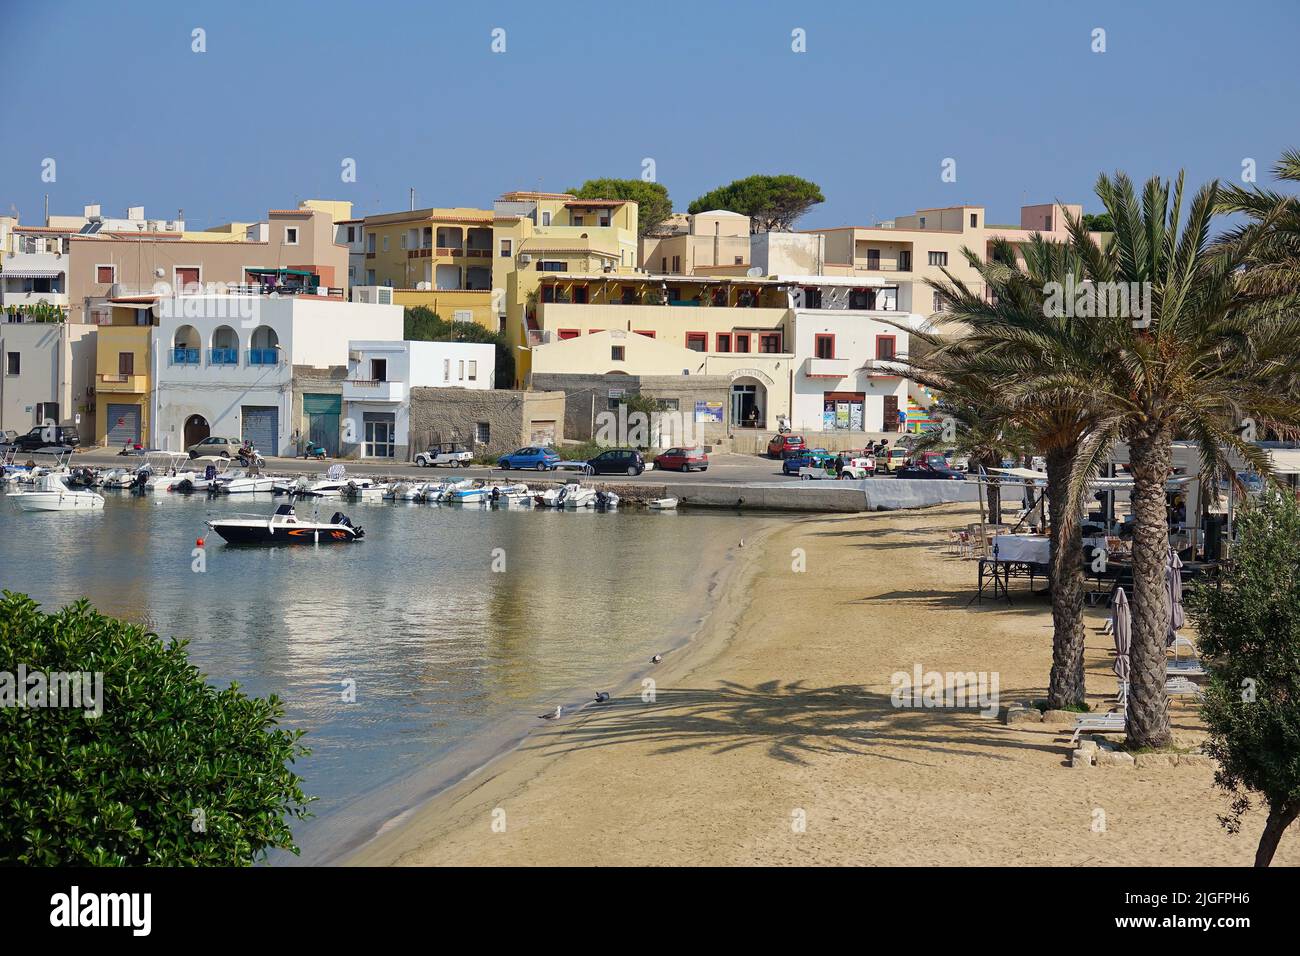 Blick auf das Dorf mit Blick auf den alten Hafen von Lampedusa. LAMPEDUSA, ITALIEN - AUGUST 2019 Stockfoto